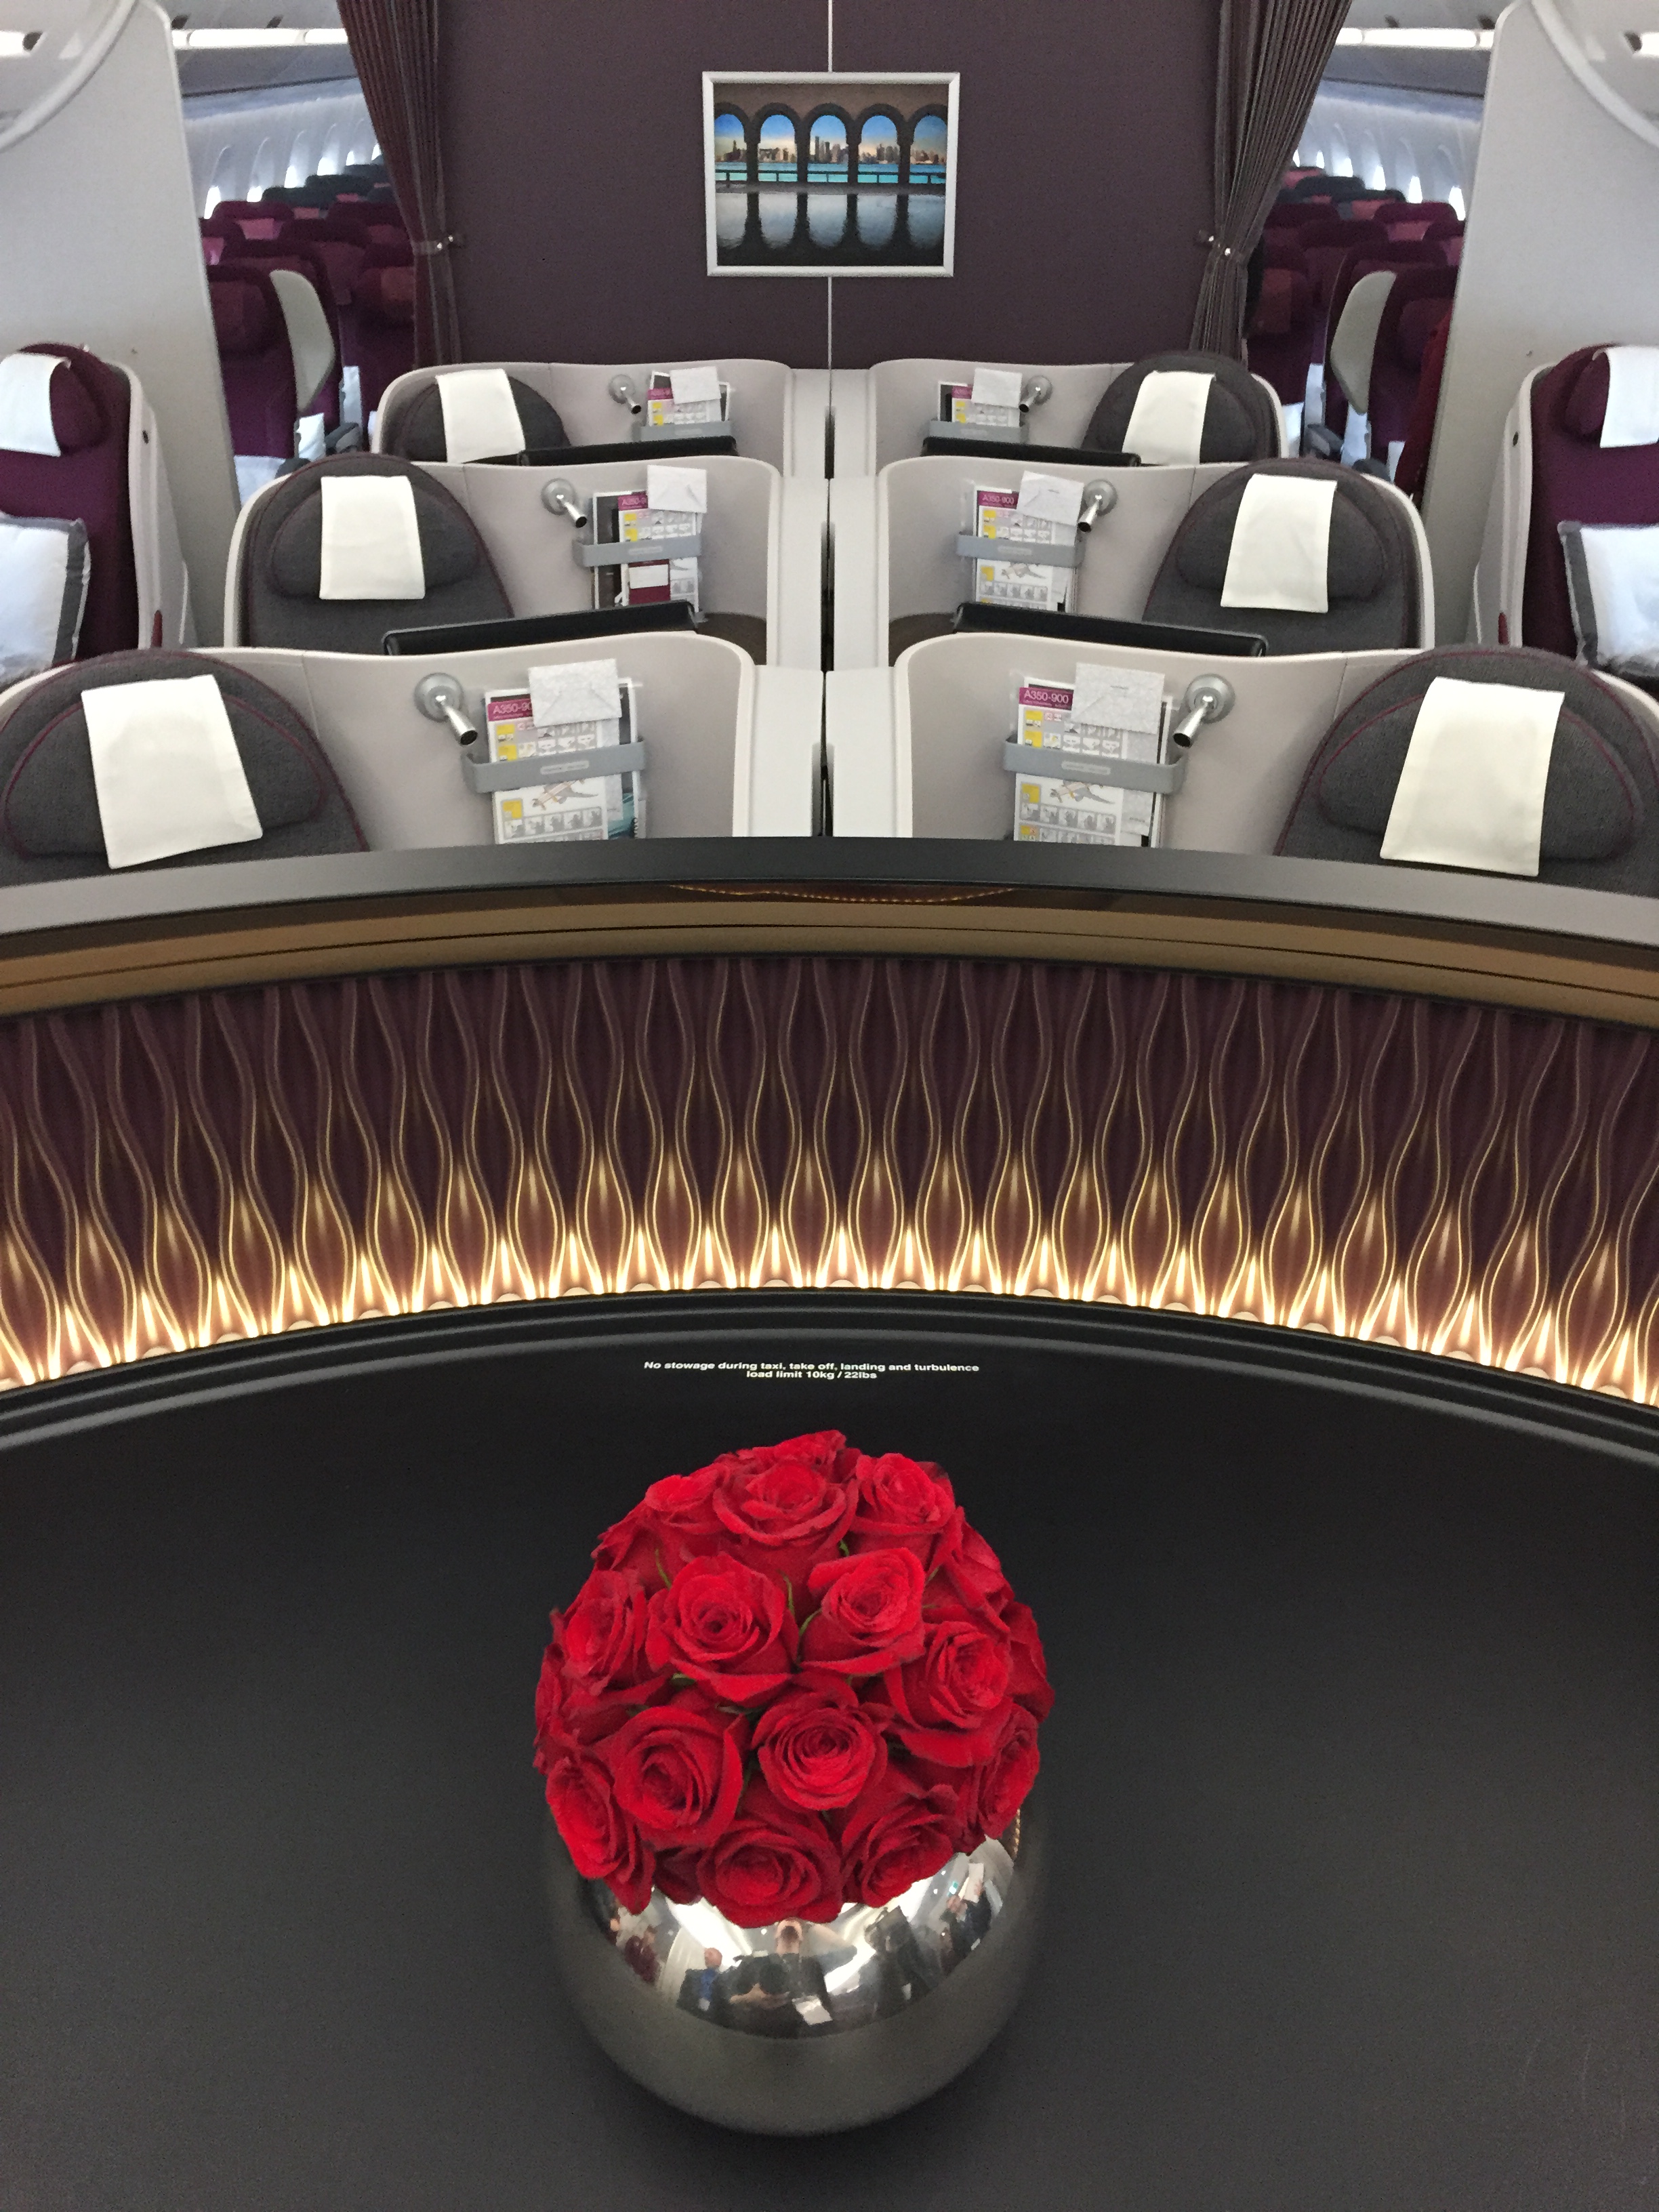 Qatar Airways Airbus A350-900 - Business Class cabin